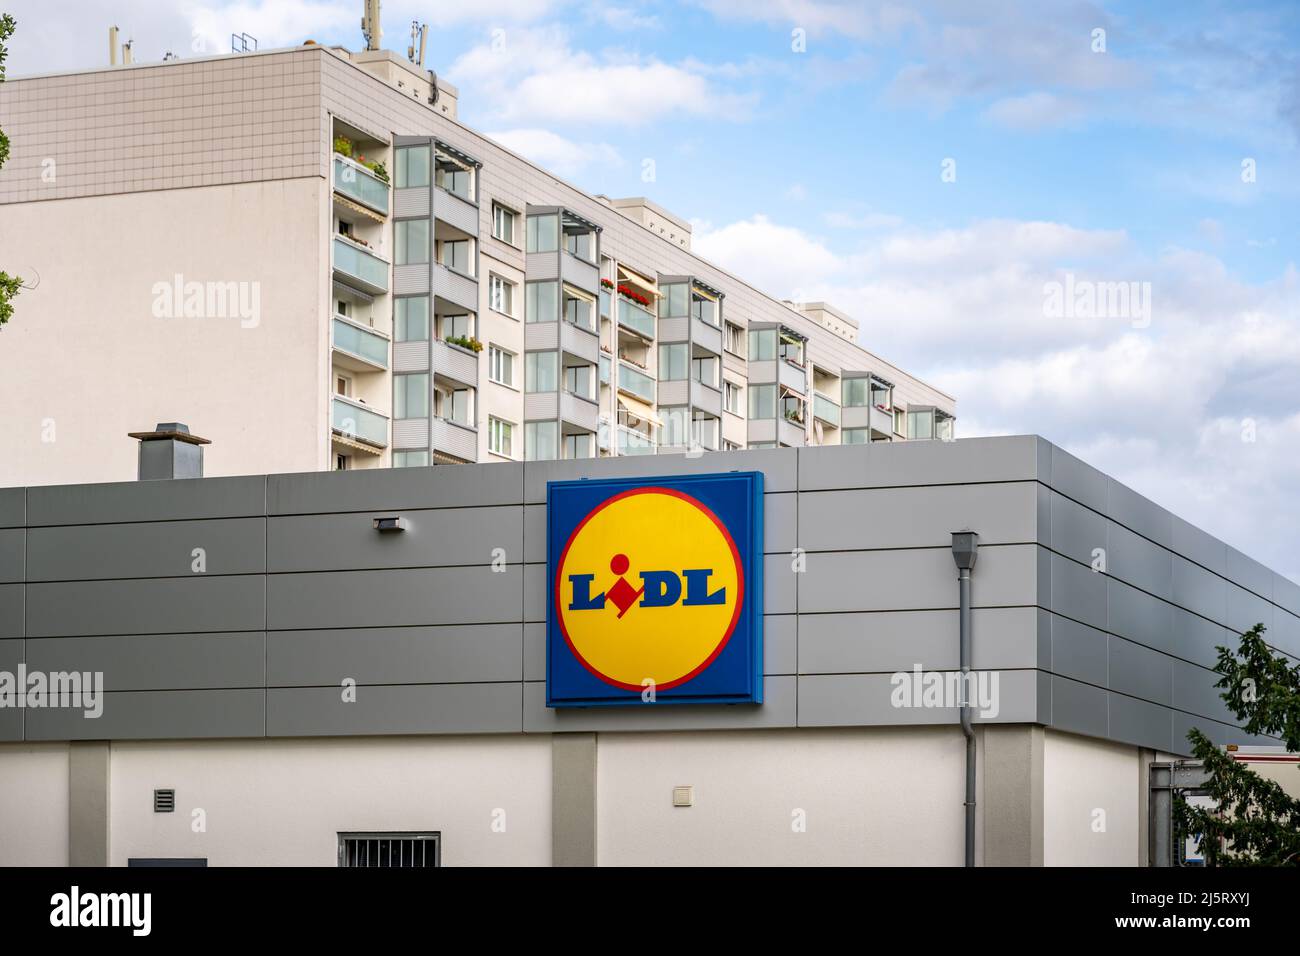 Lidl-Supermarkt vor einem Wohnhaus in der Stadt. Berühmter Supermarkt mit einem großen Logo an der Fassade. Lebensmitteldiscounter in Europa. Stockfoto